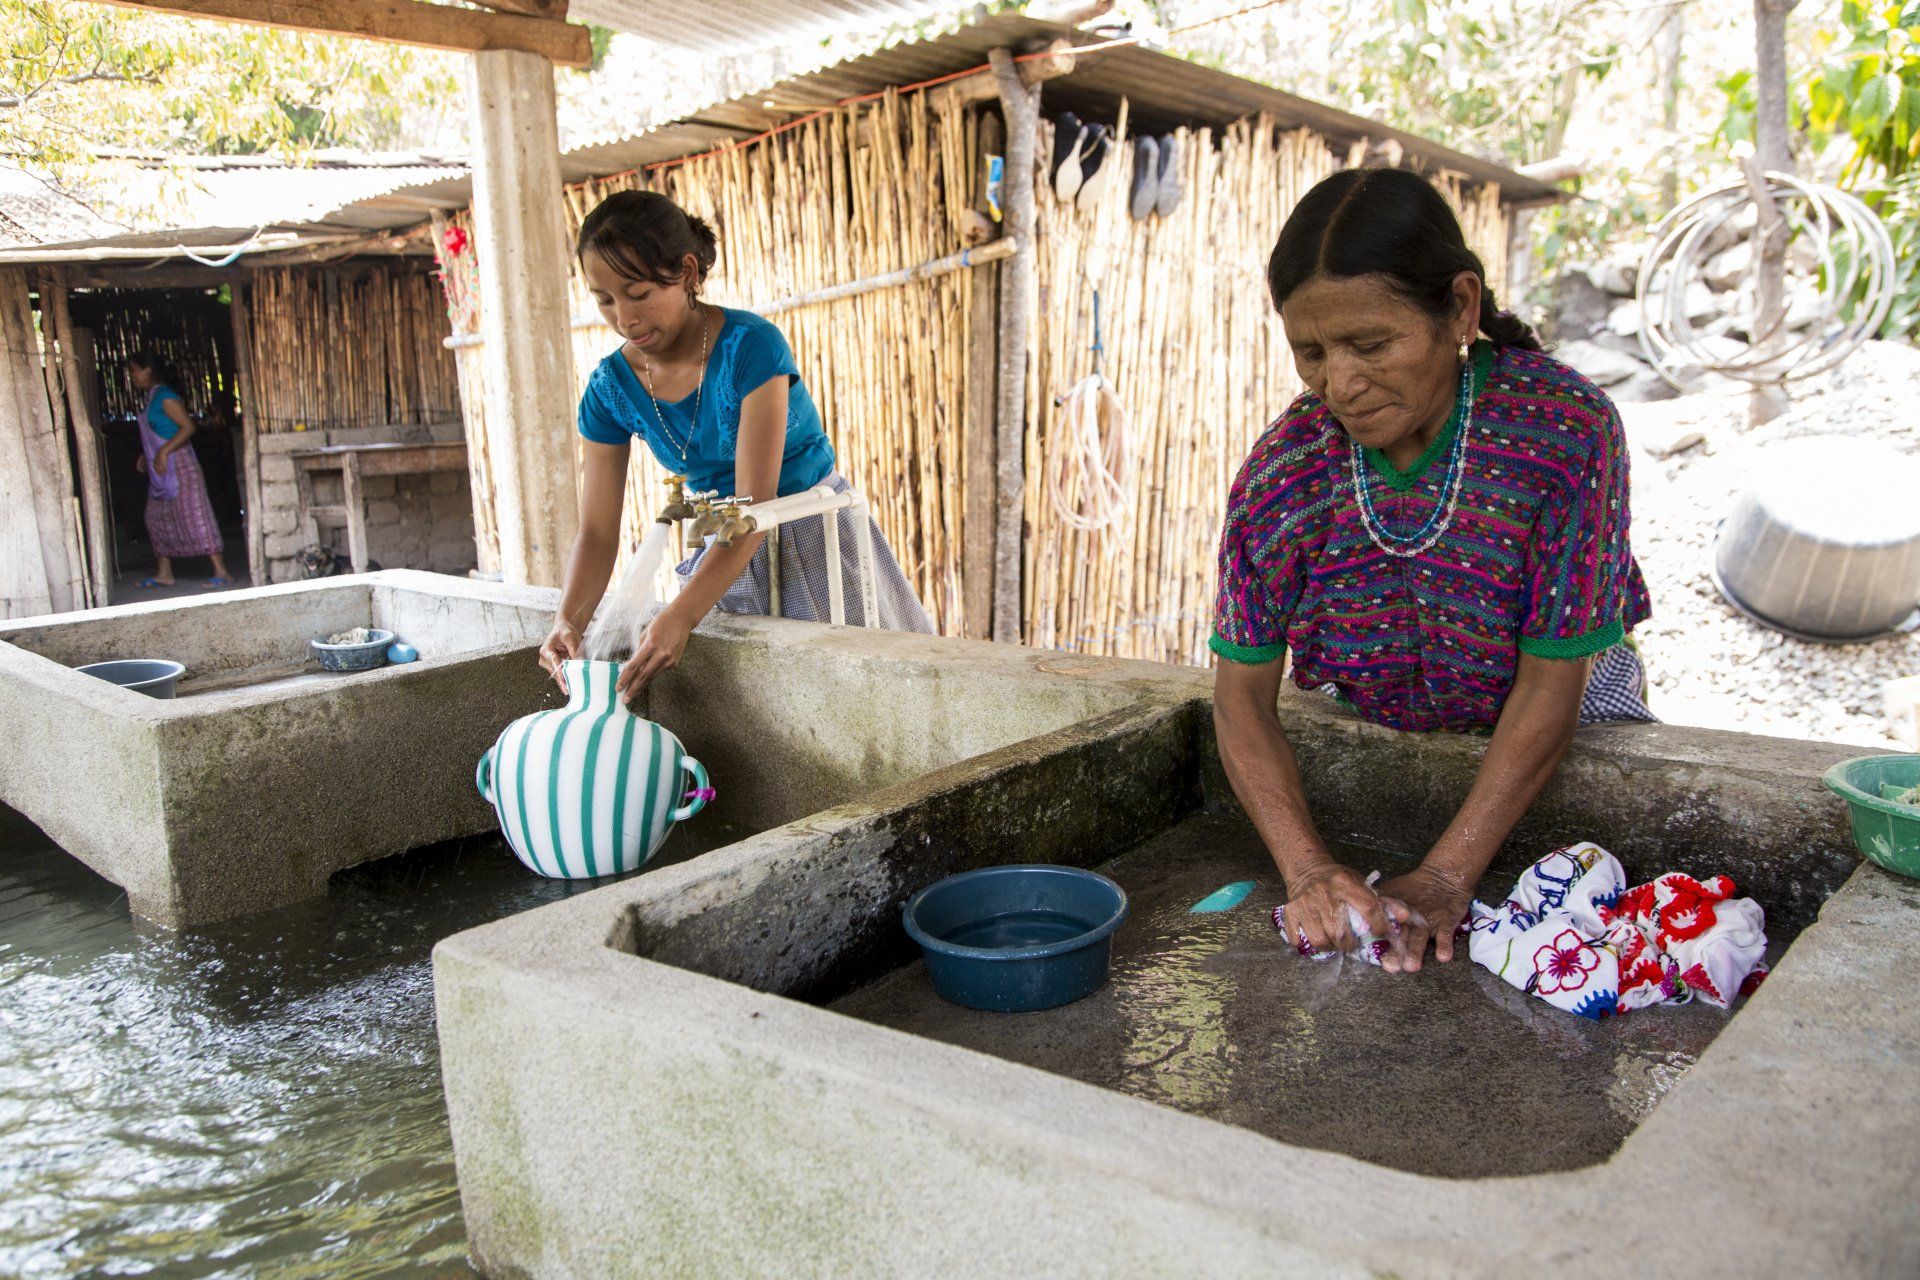 Mujeres, agua y ciclo de pobreza